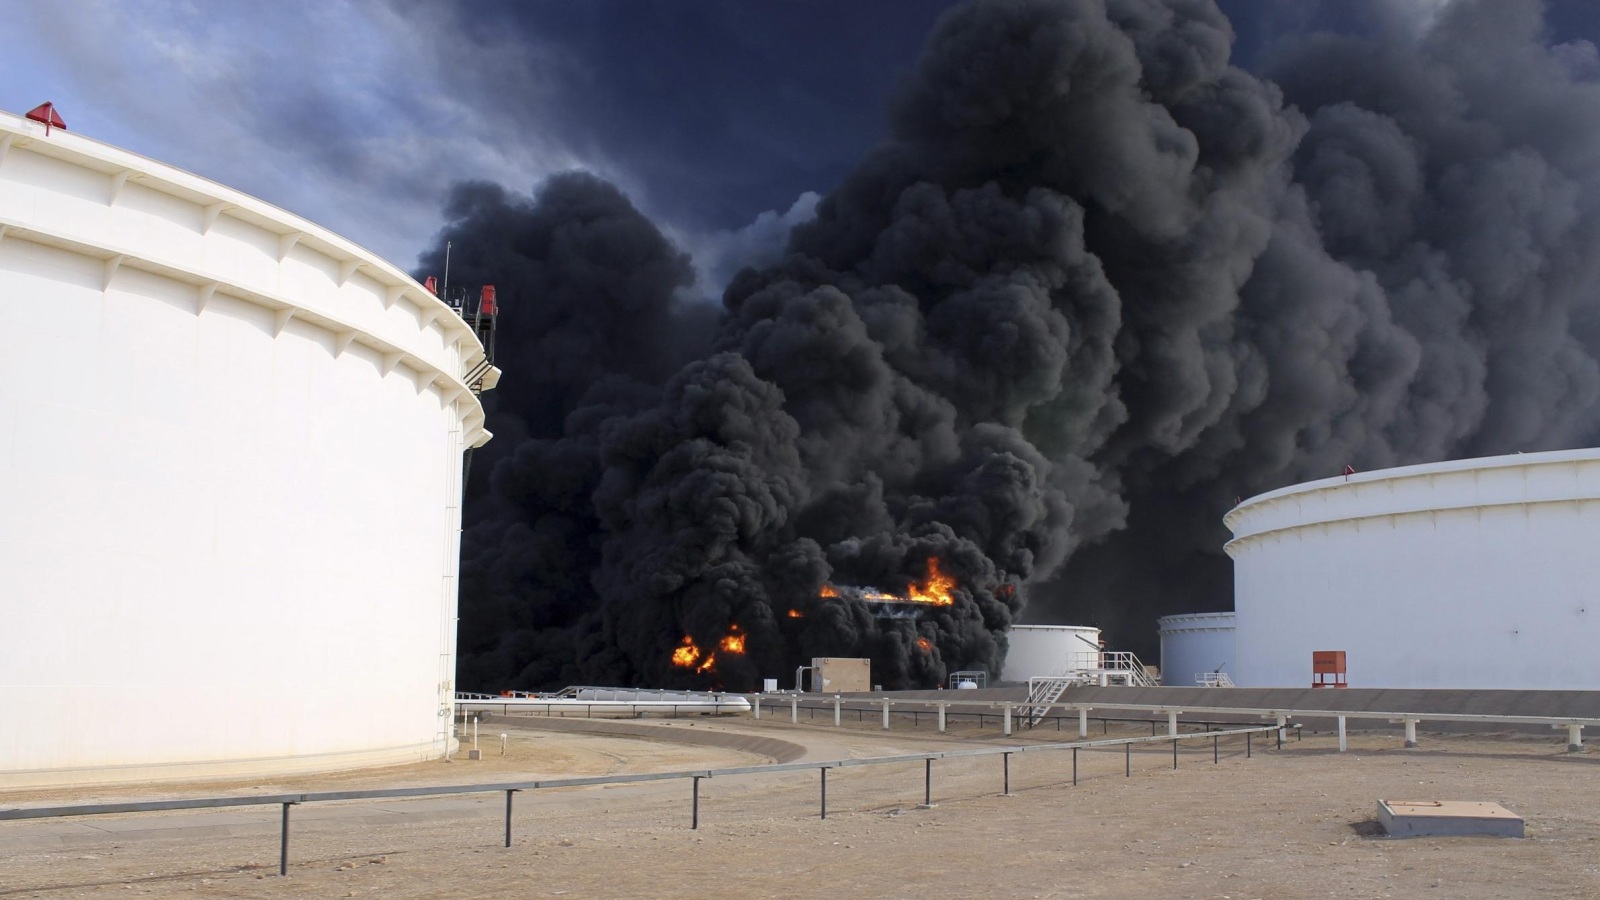 بعض خزانات النفط في الحقول الليبية دمرت أثناء الحرب مما تسبب بخسائر كبيرة (رويترز)